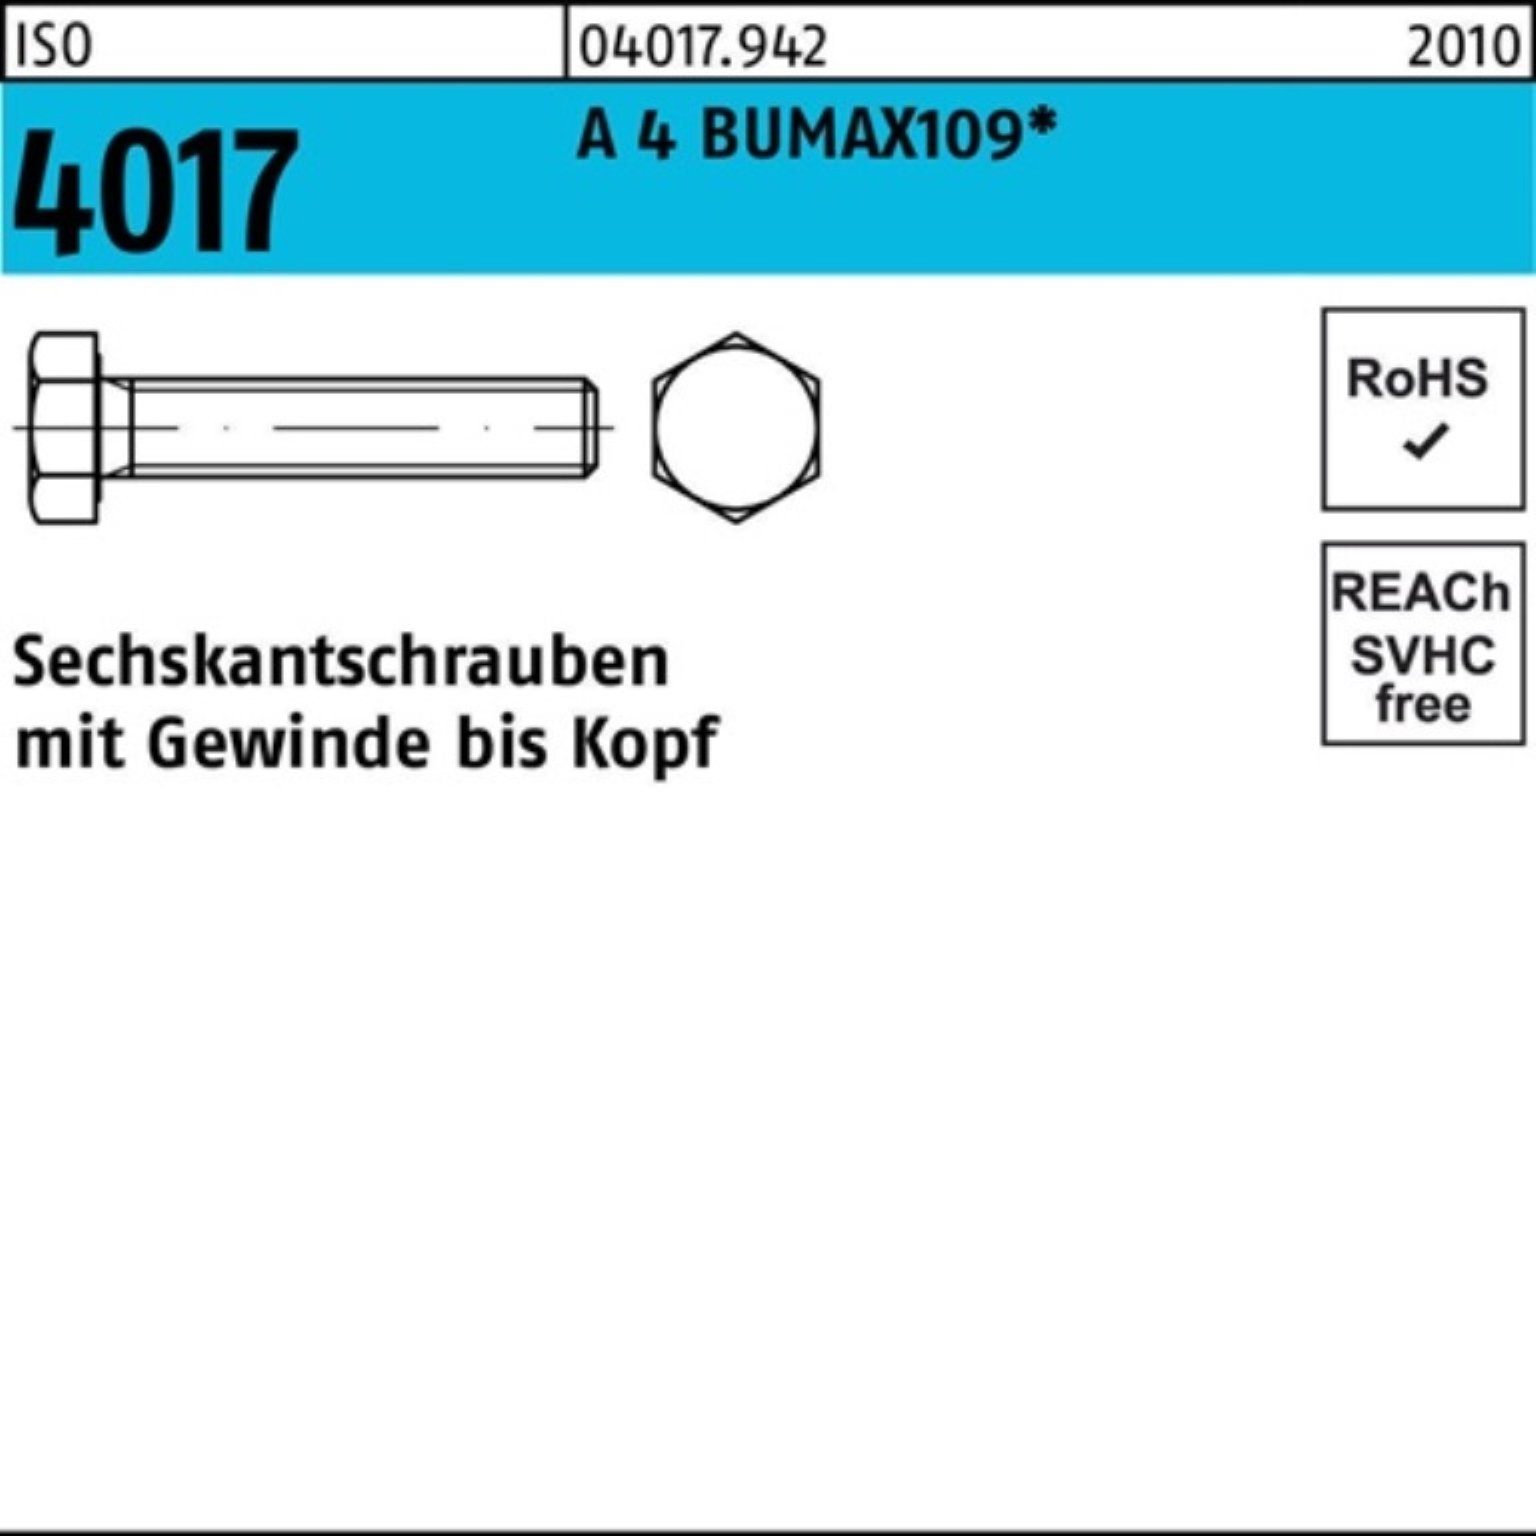 100er Sechskantschraube 25 BUMAX109 4 A 50 Stüc VG M16x Sechskantschraube ISO 4017 Bufab Pack